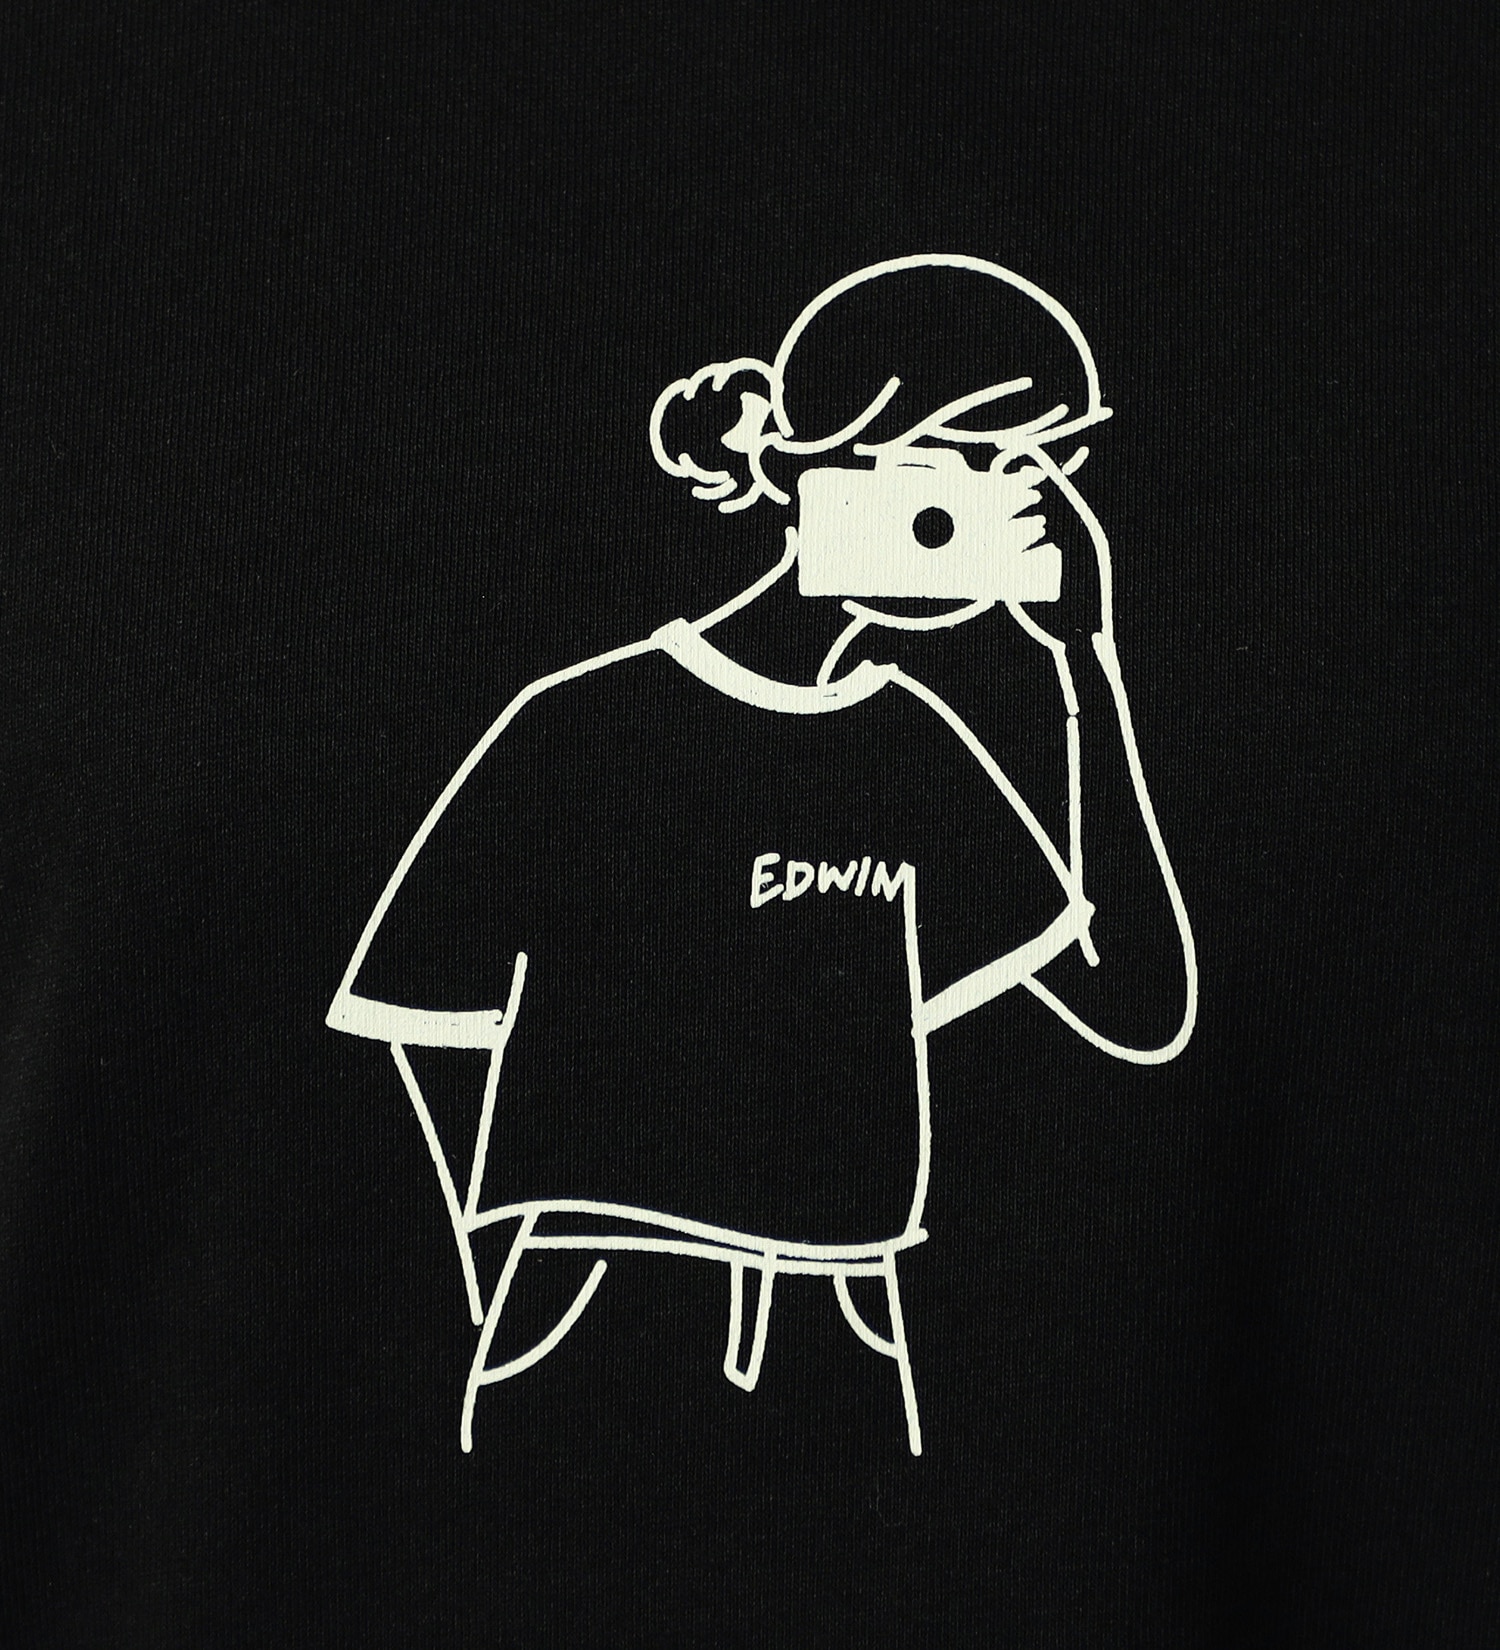 EDWIN(エドウイン)のイラストプリントTシャツ【アウトレット店舗・WEB限定】|トップス/Tシャツ/カットソー/レディース|ブラック